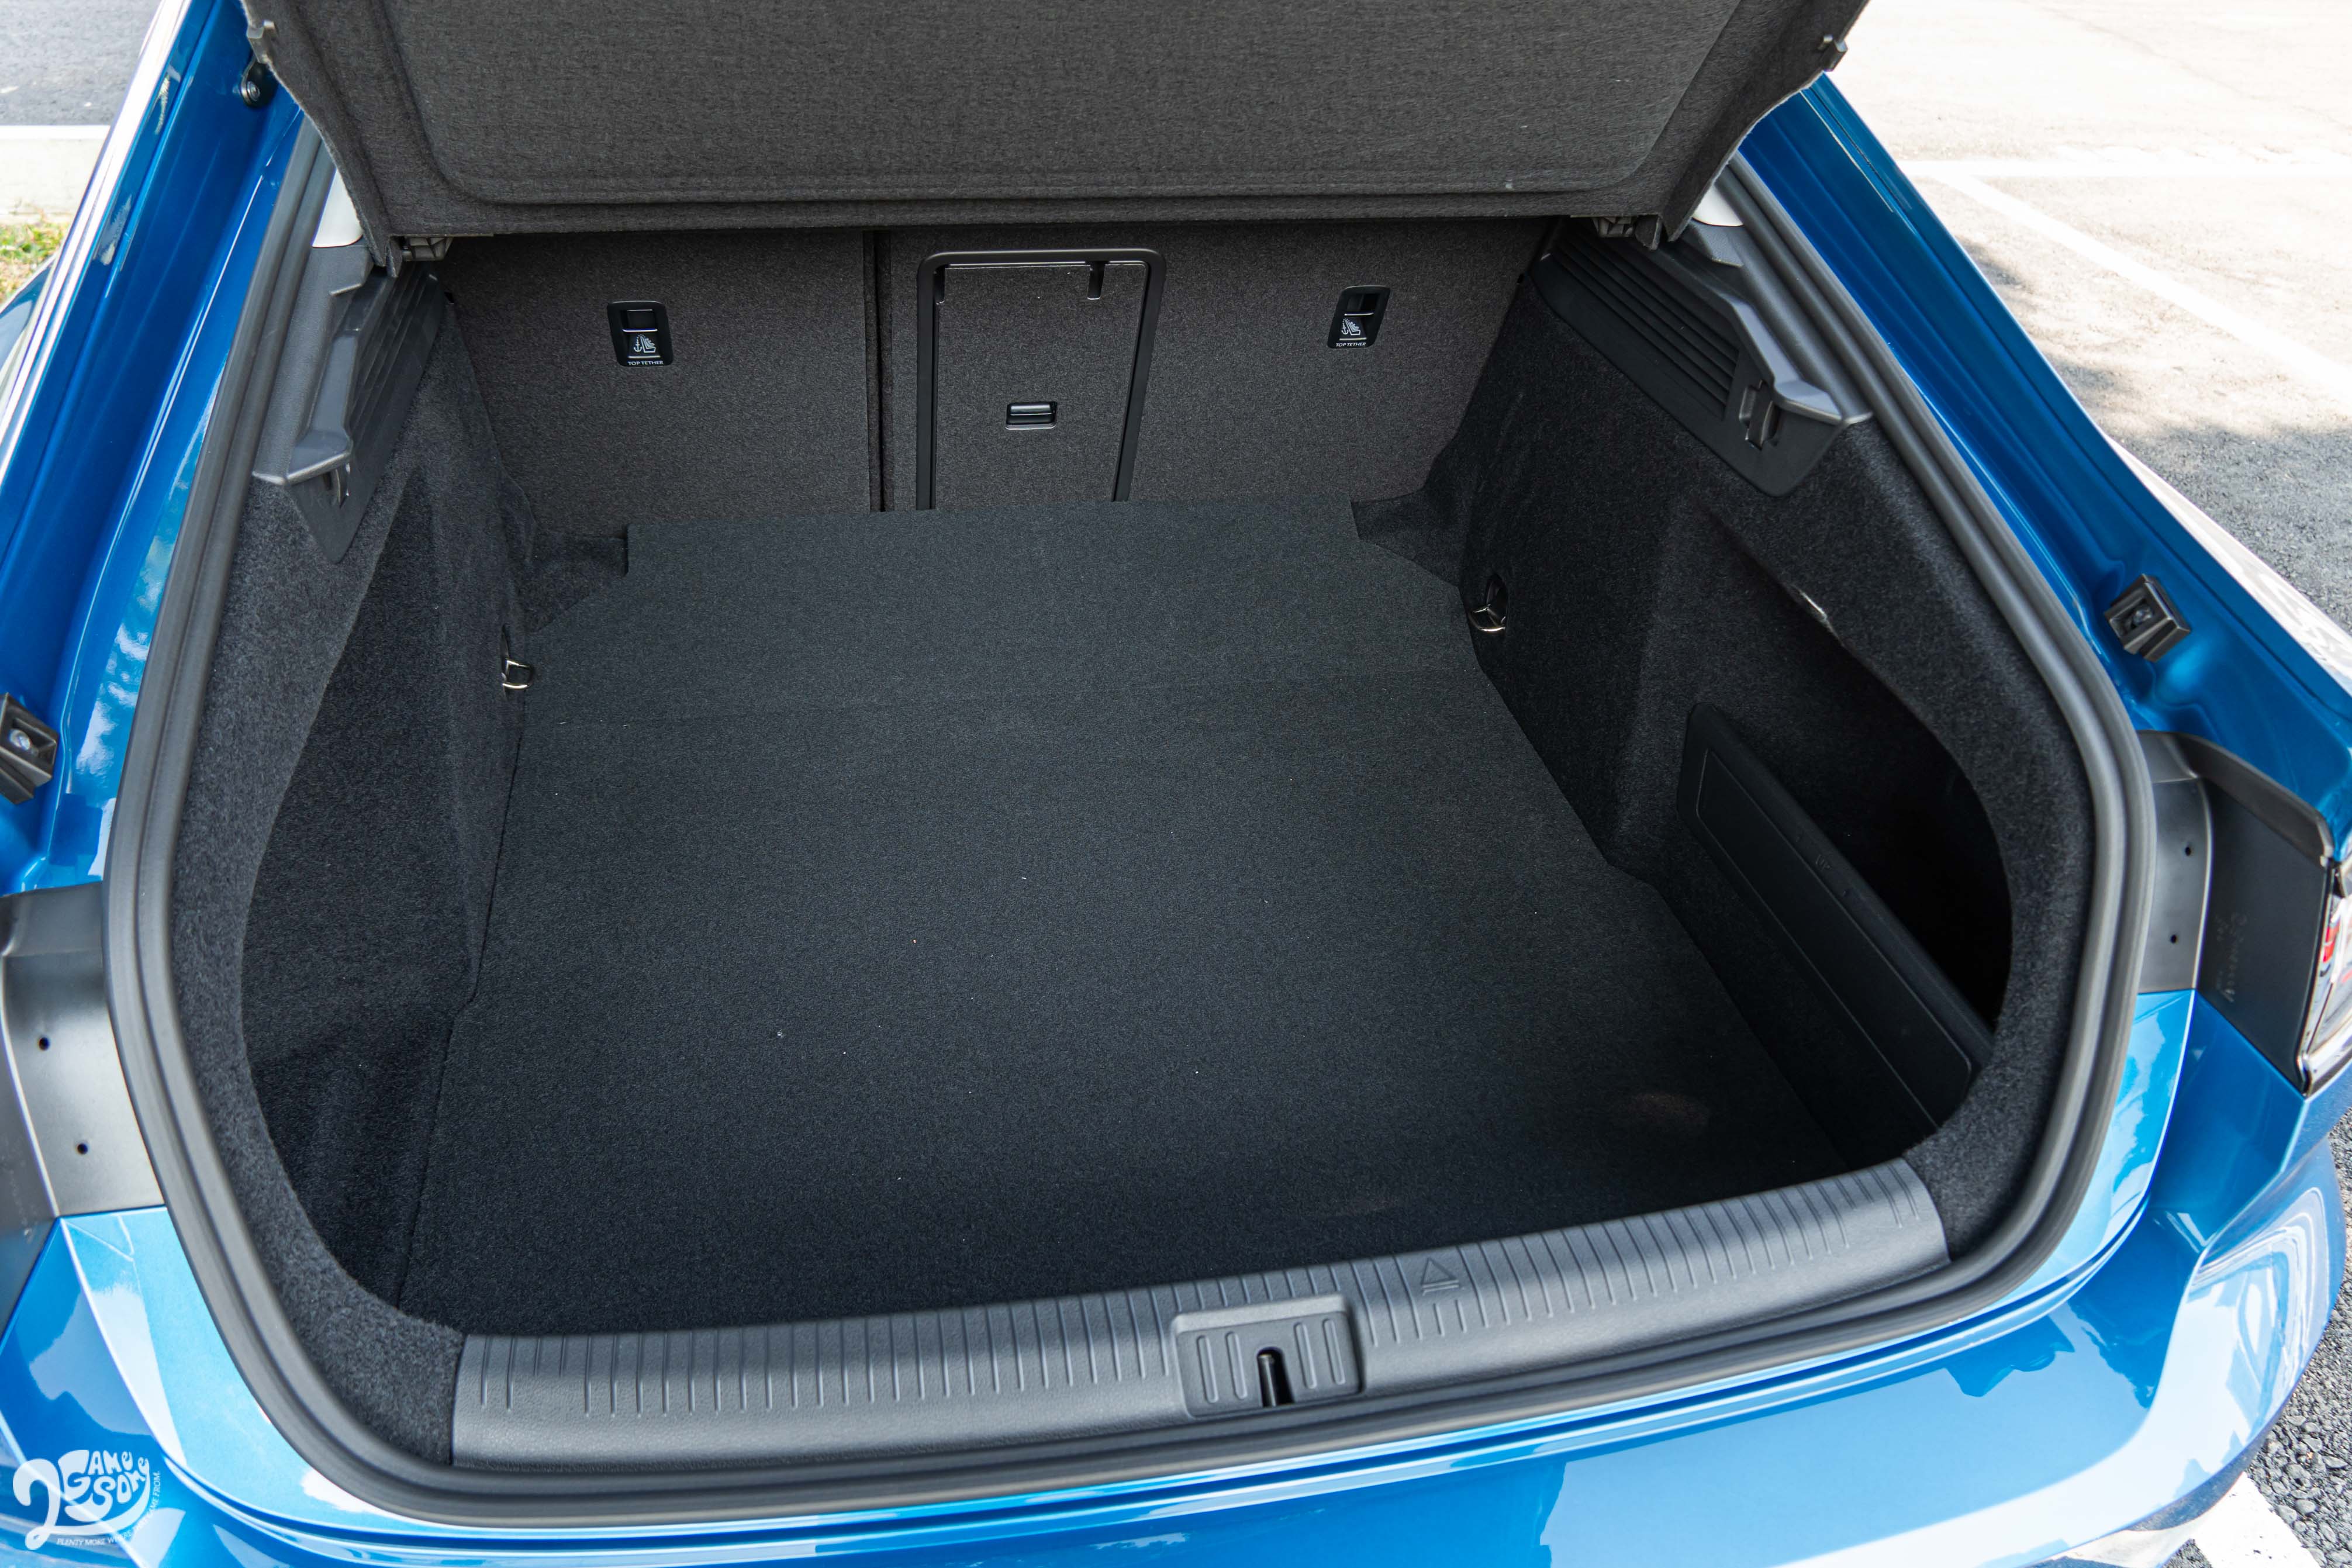 Fastback 車型在標準乘坐狀態下就可擁有 563 公升置物容積。